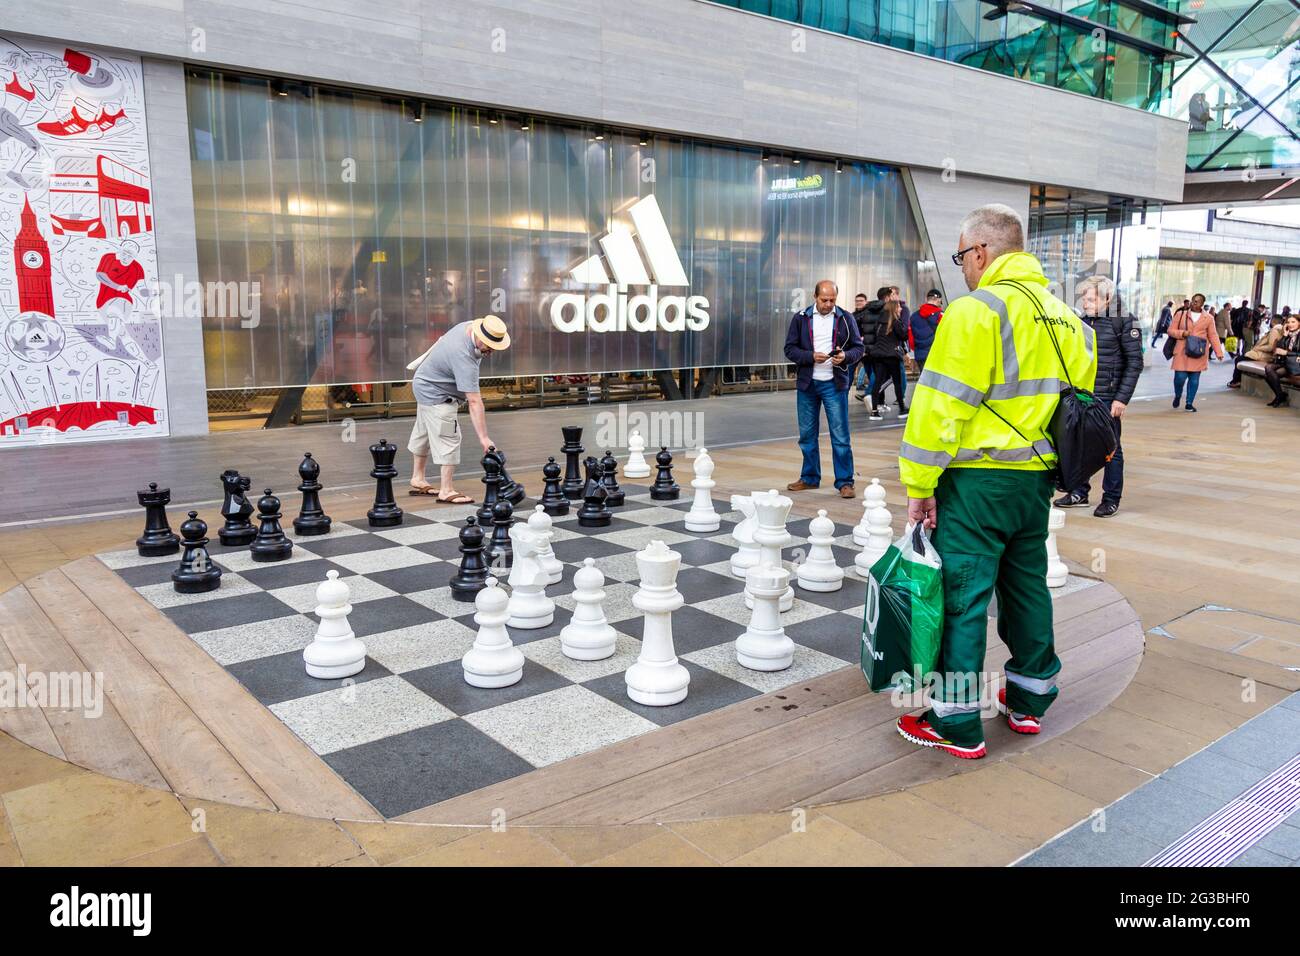 Gente jugando ajedrez en el centro comercial Westfield Stratford, Stratford, Londres, Reino Unido Foto de stock